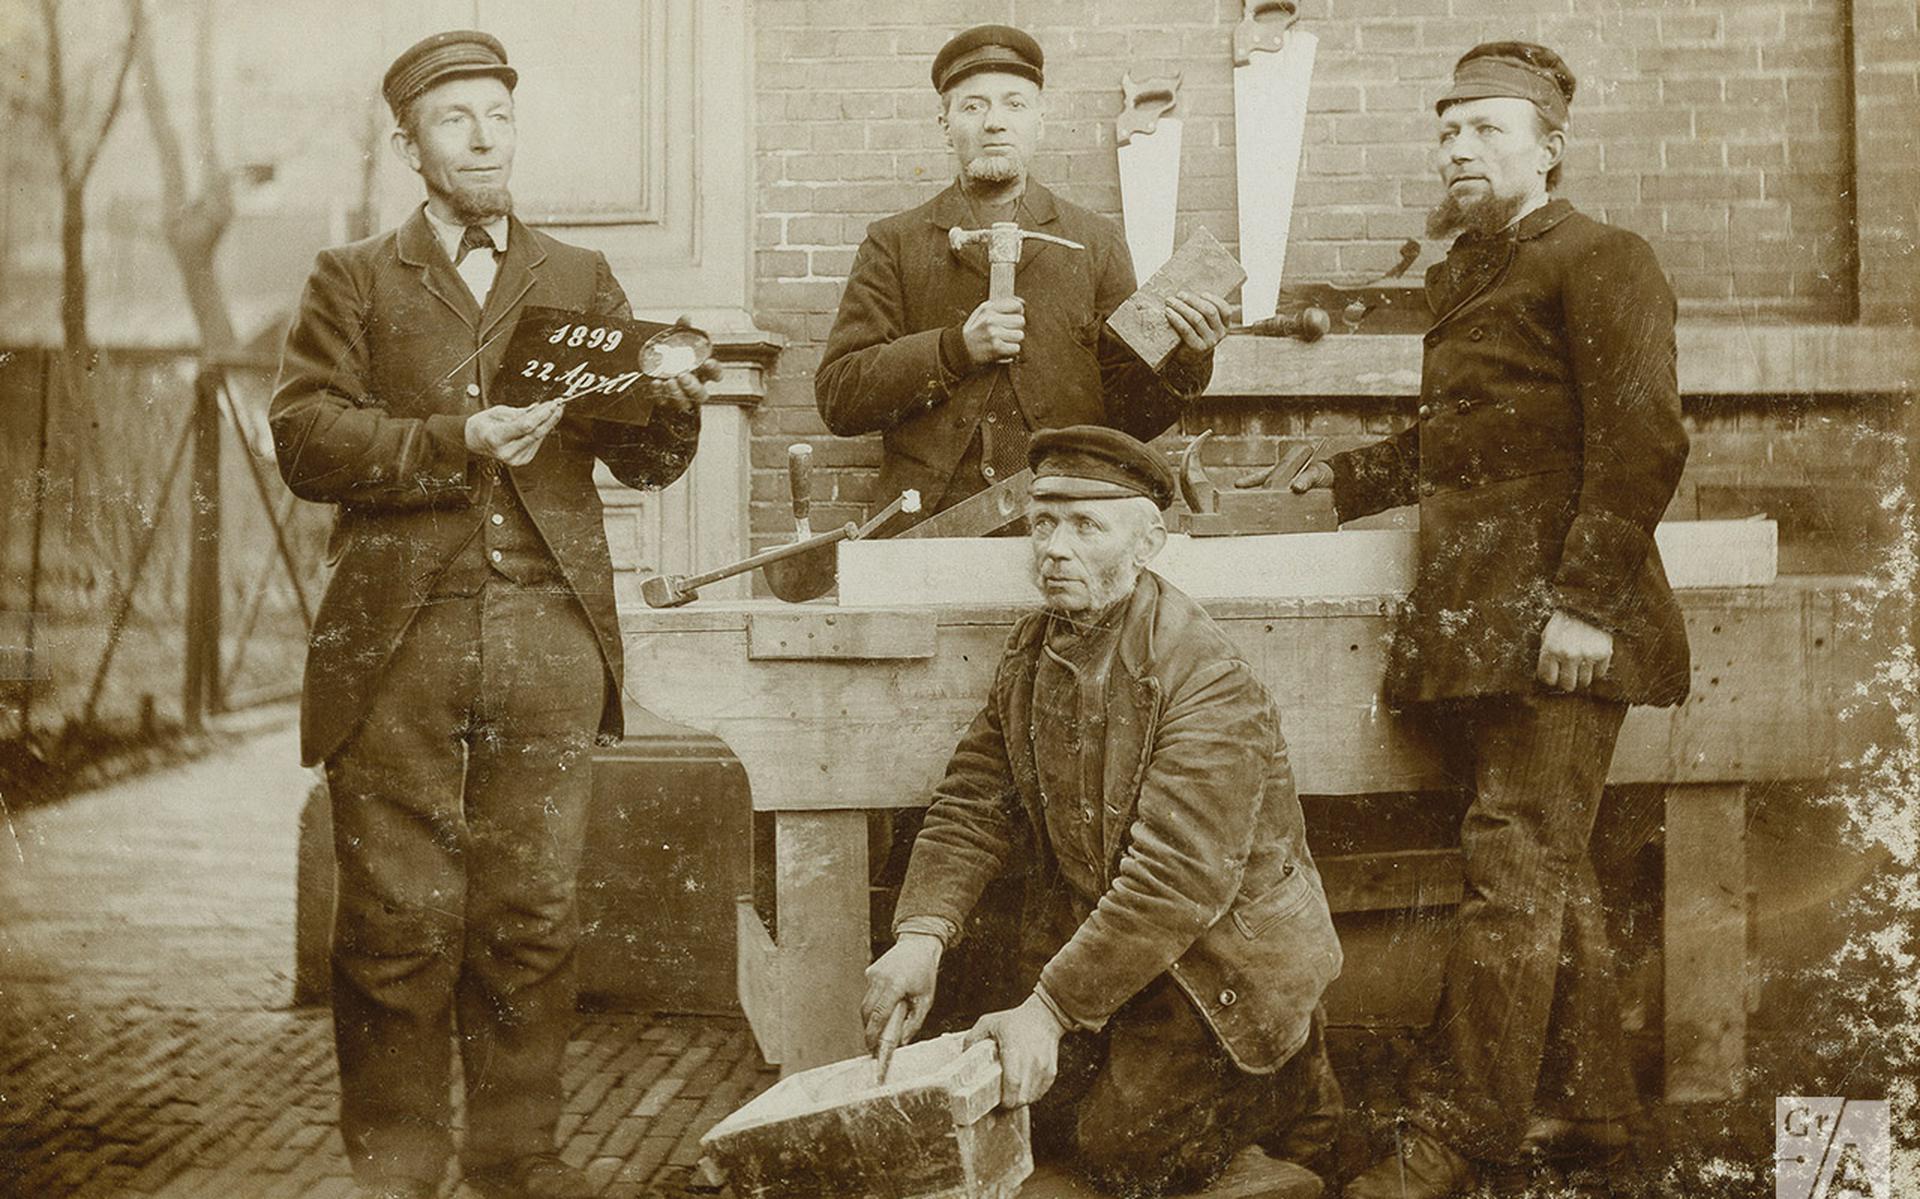 Ambachtslieden poseren voor een vriend, Broerstraat, 1899.